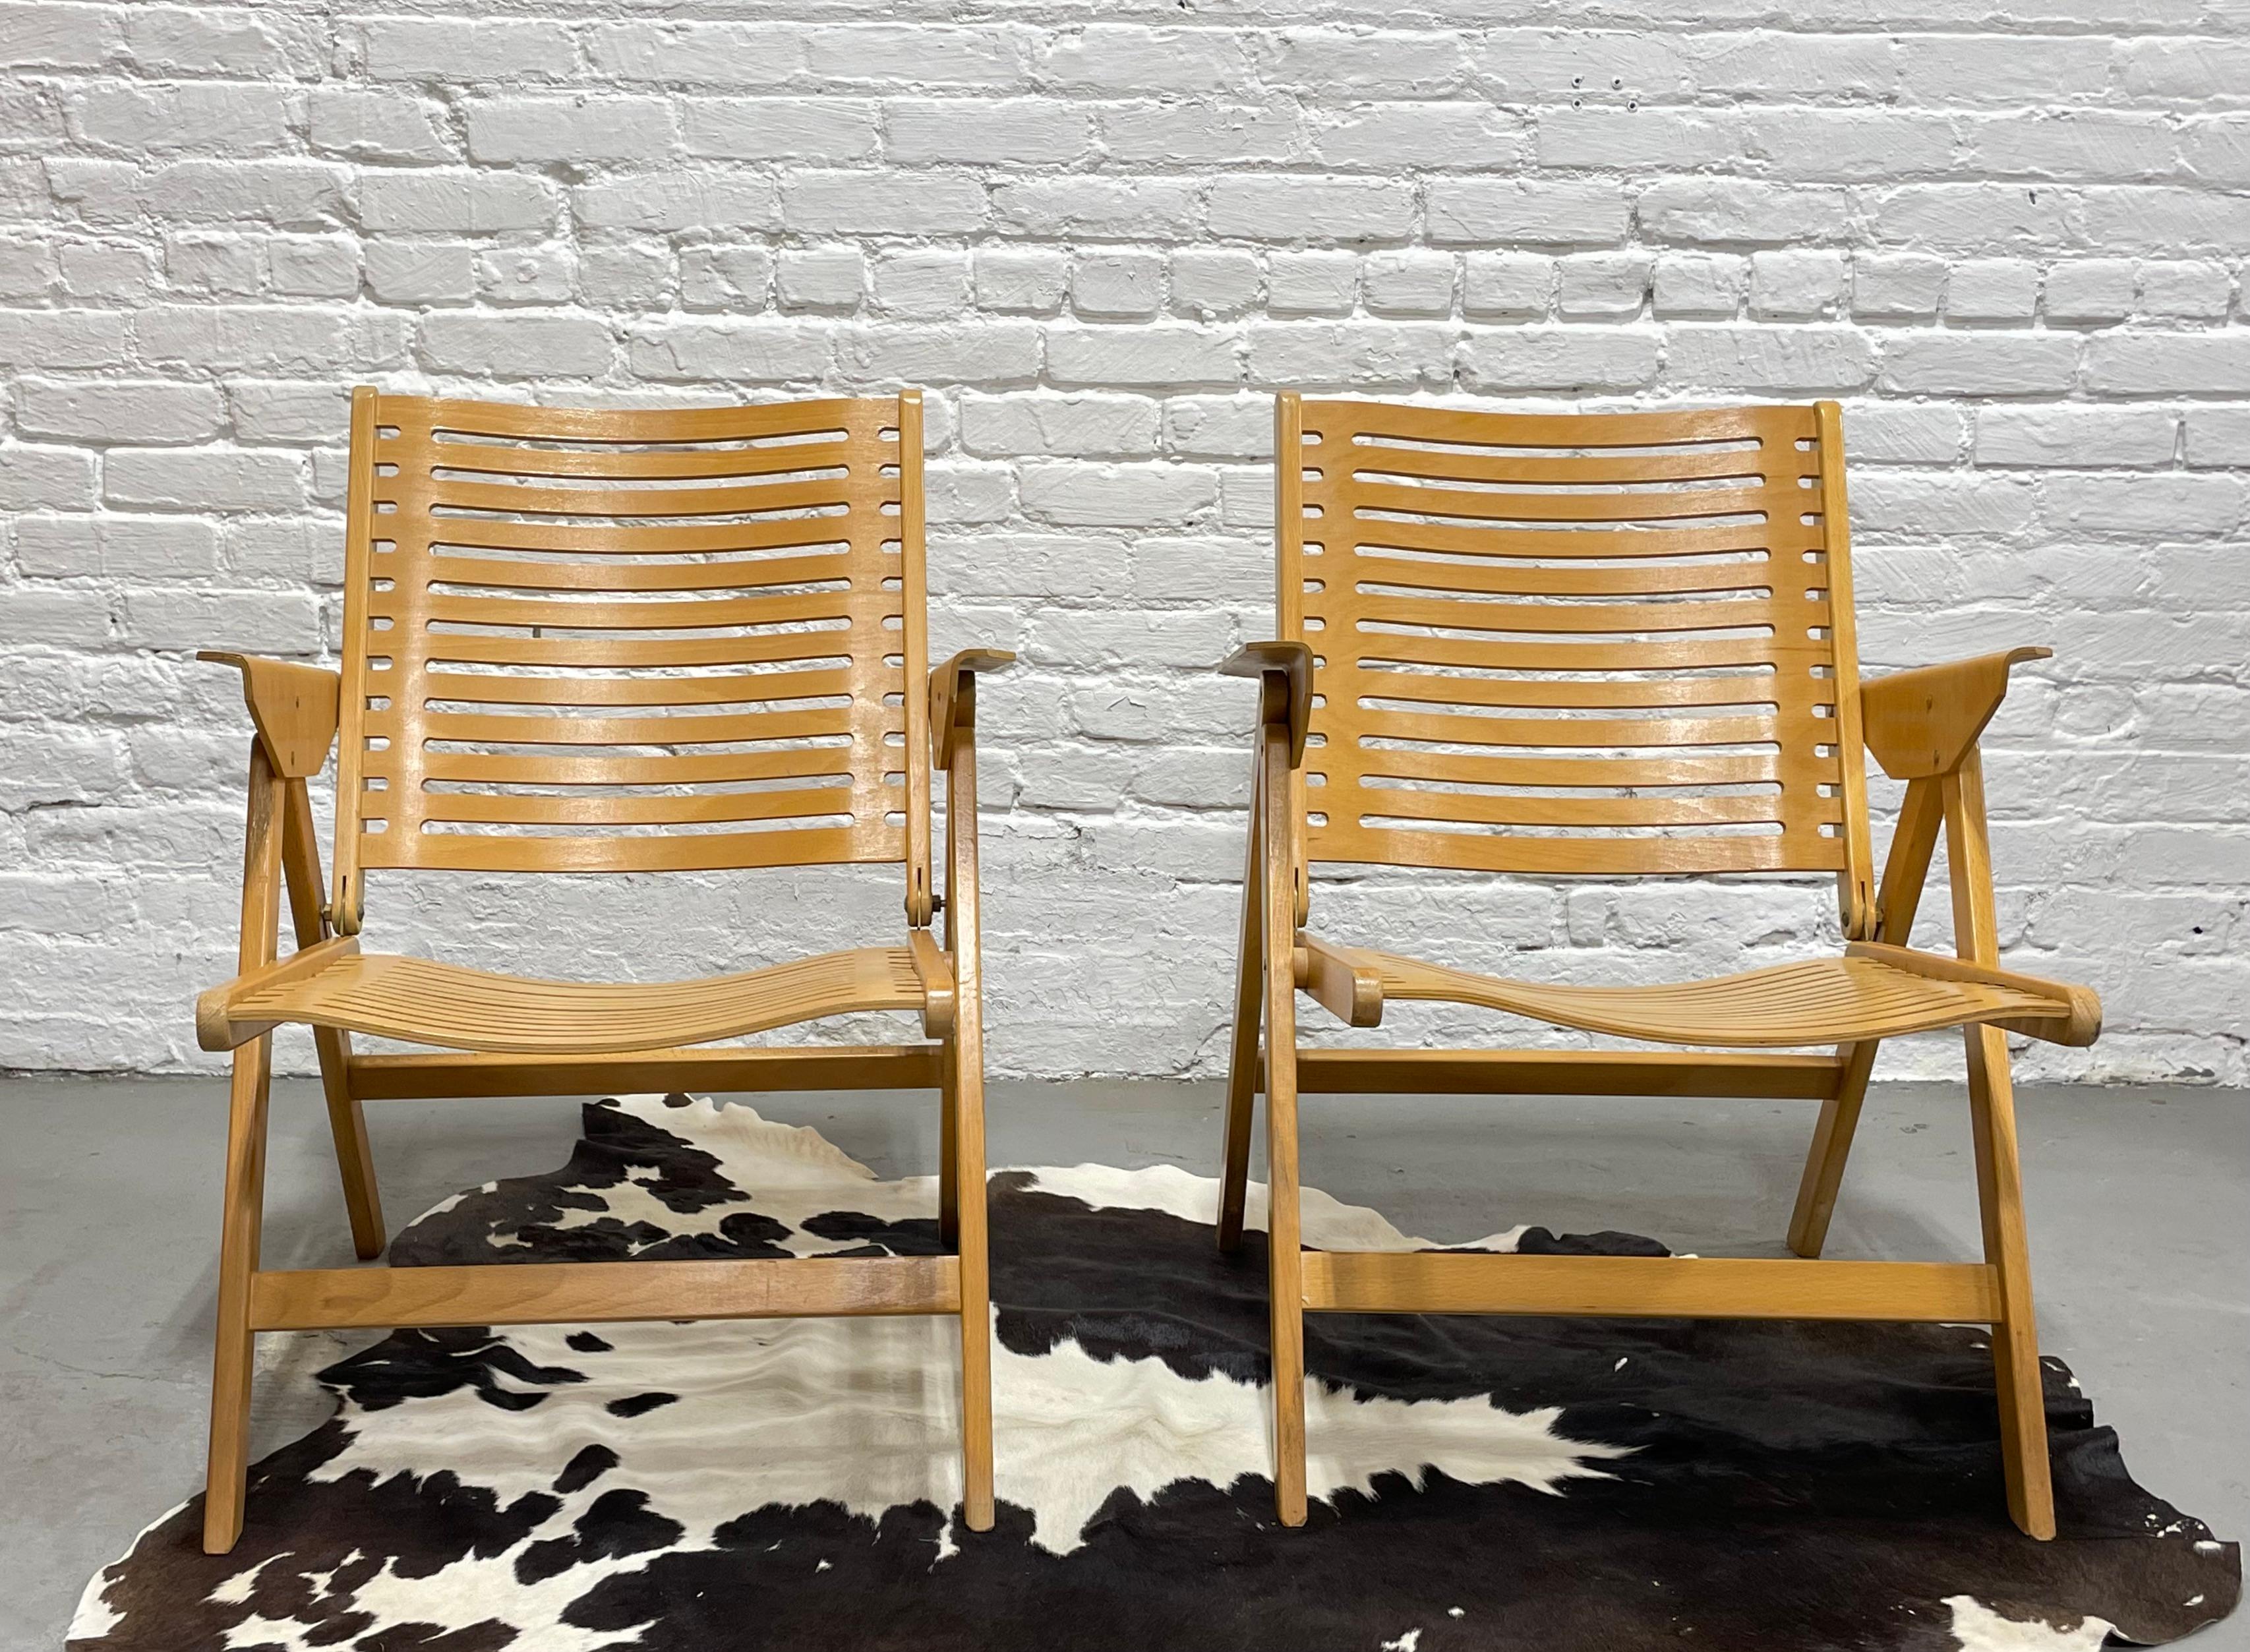 Ikonisches Paar klappbarer Rex Kralj Sessel, entworfen von dem slowenischen Architekten Nikos Kralj. Hergestellt aus massiver Buche und gebogenem Buchensperrholz. Dieses reizende Paar bietet bequeme und stilvolle Sitzgelegenheiten in Ihrem